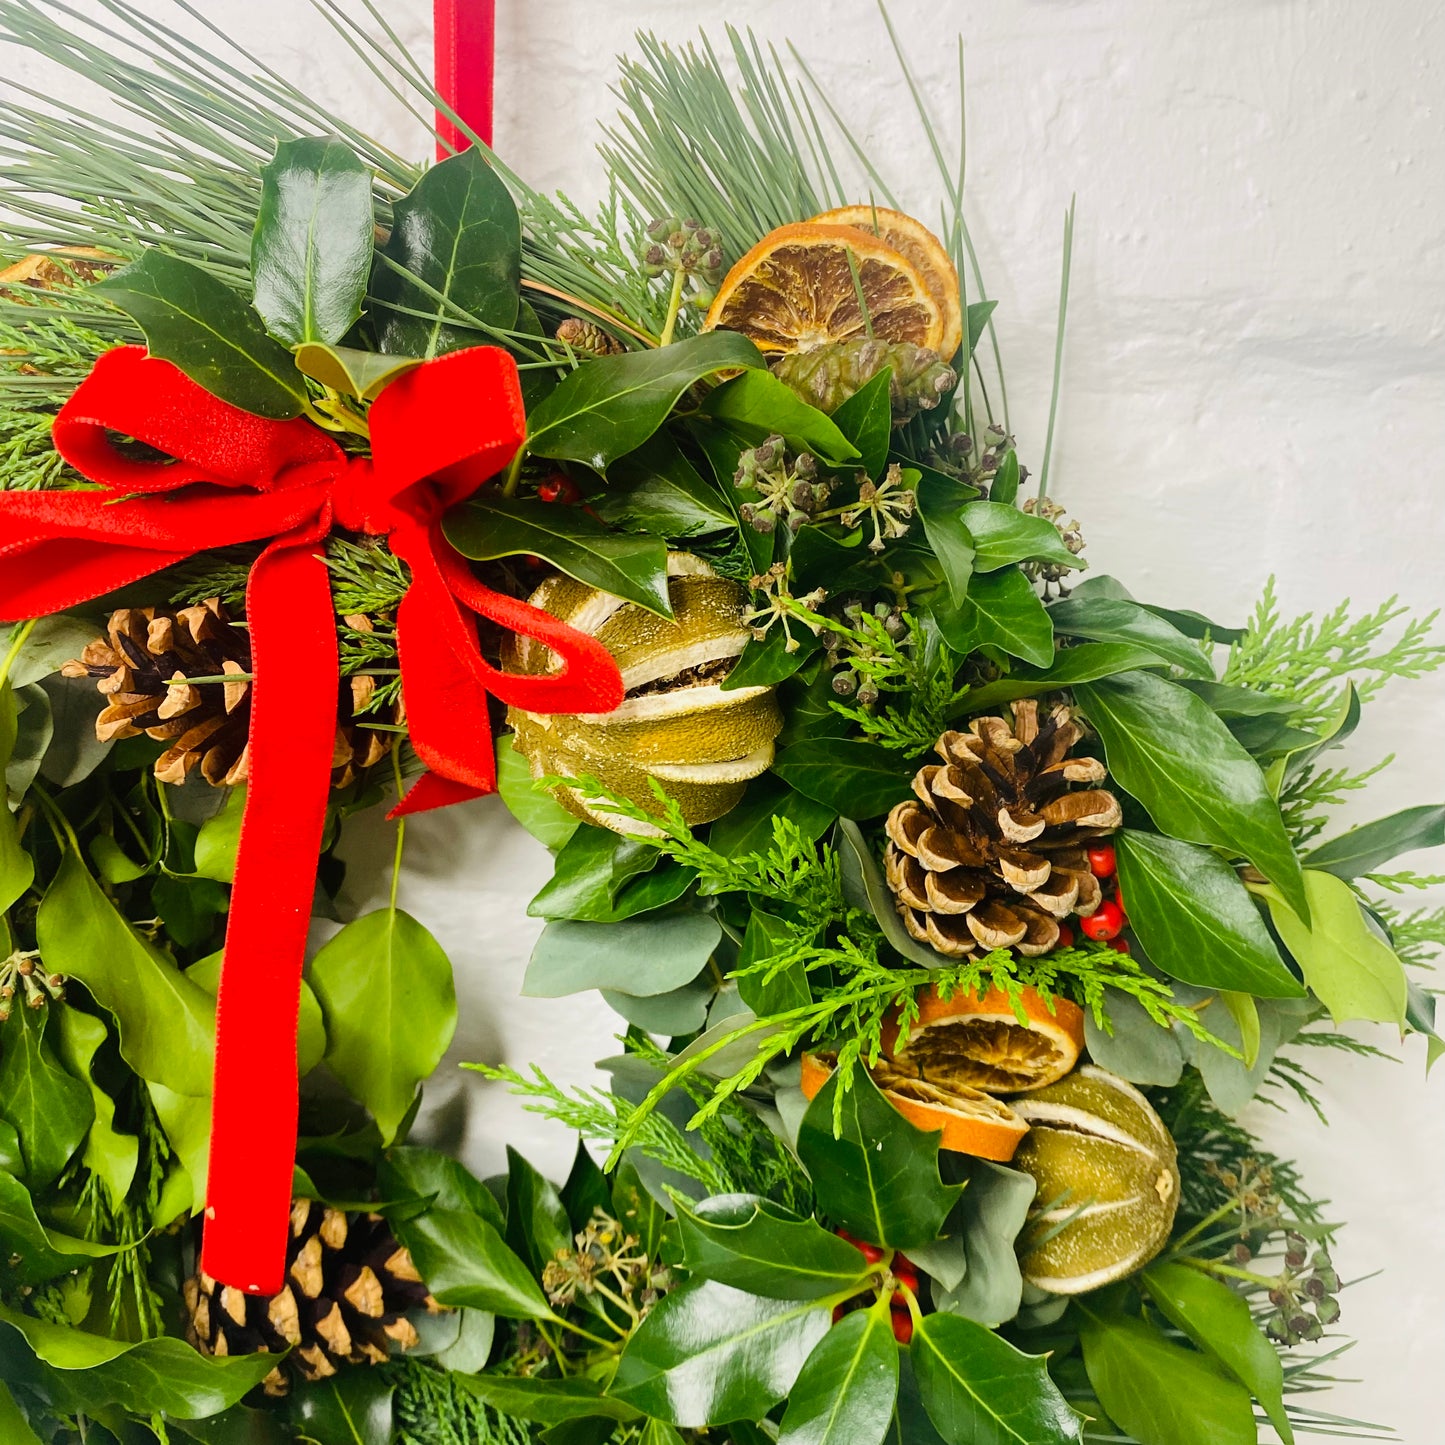 Holly Berry Wreath | Christmas Door Wreath